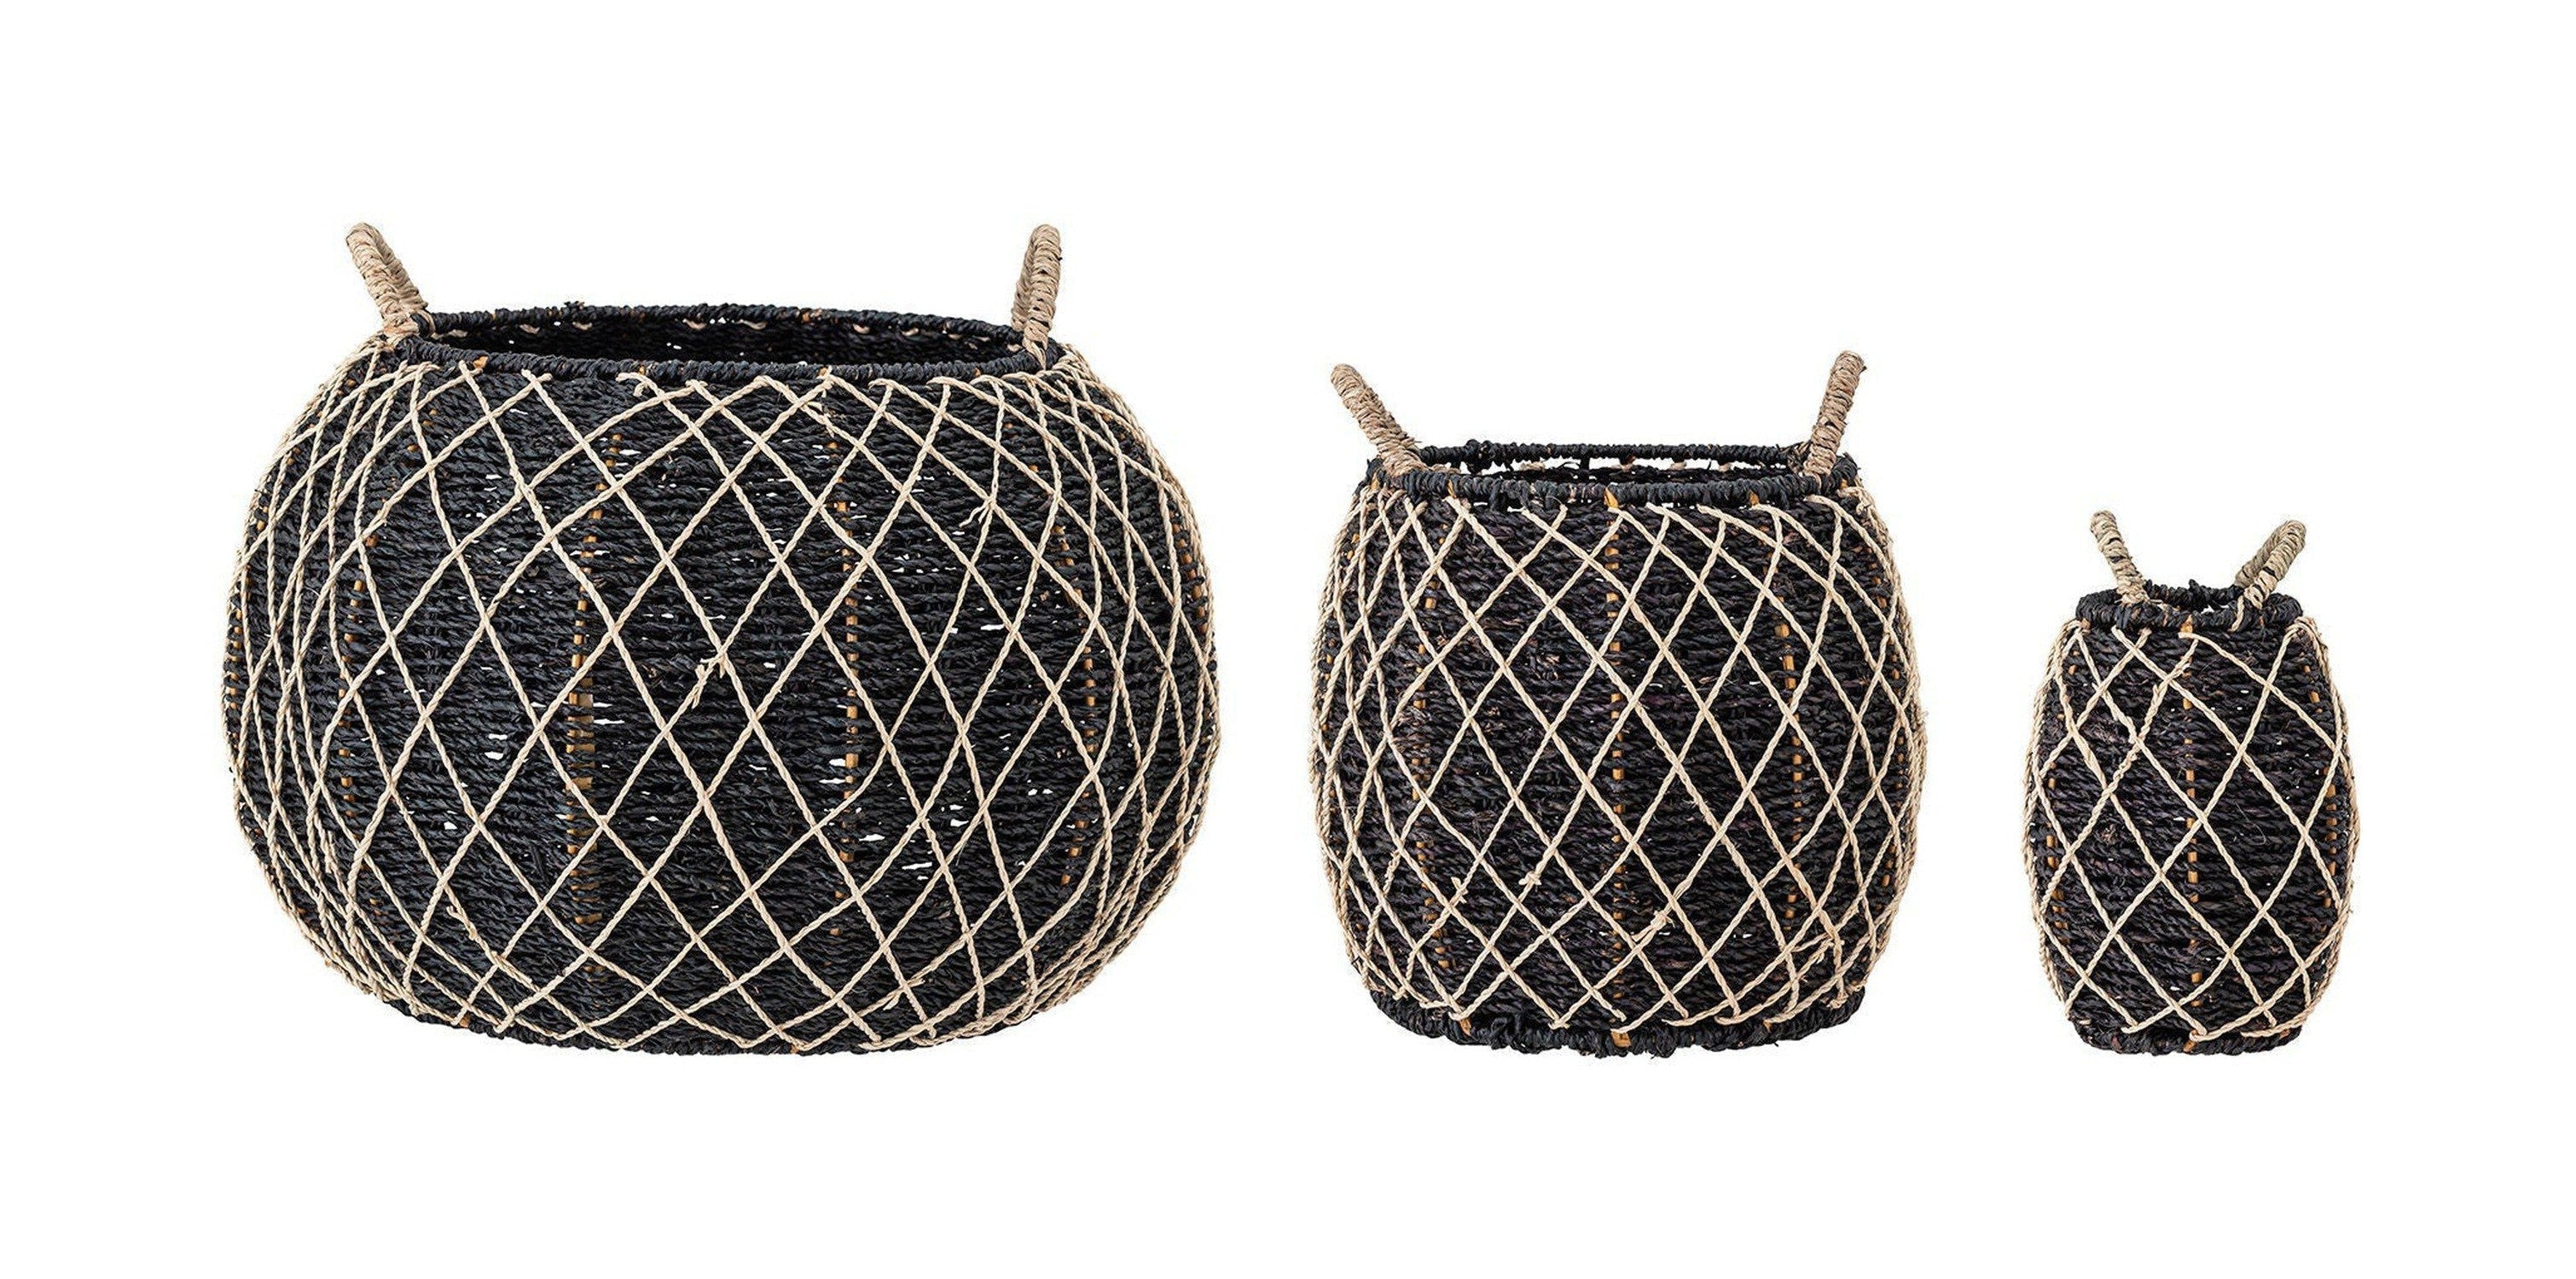 Creative Collection Karia Basket, Black, Seagrass